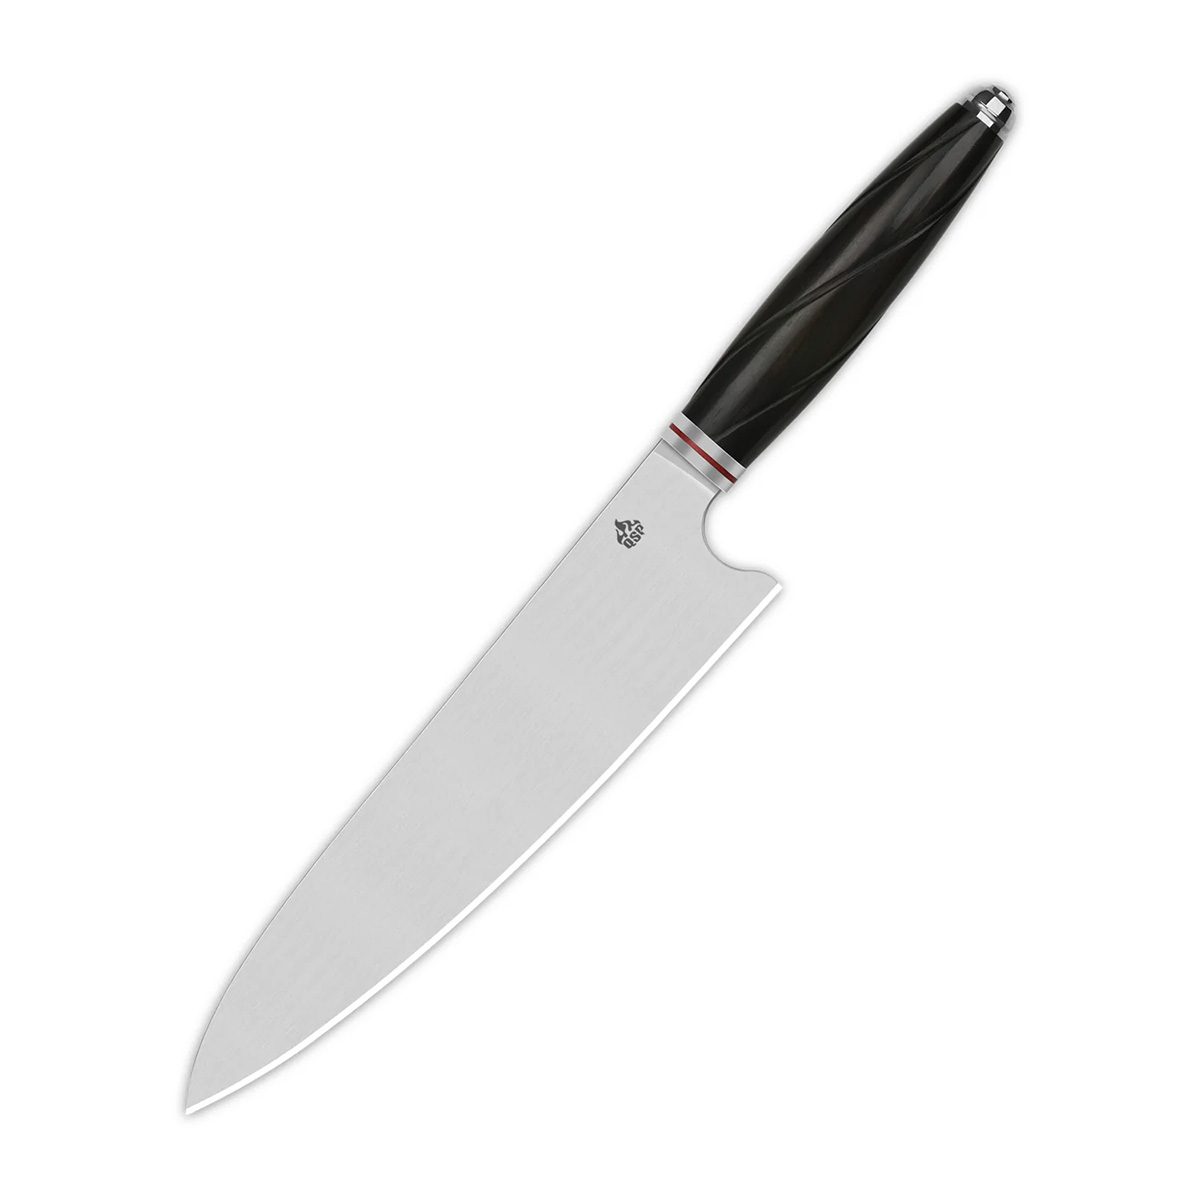 Поварской кухонный шеф нож QSP Mulan Series, сталь Sandvik 14C28N, рукоять эбеновое дерево